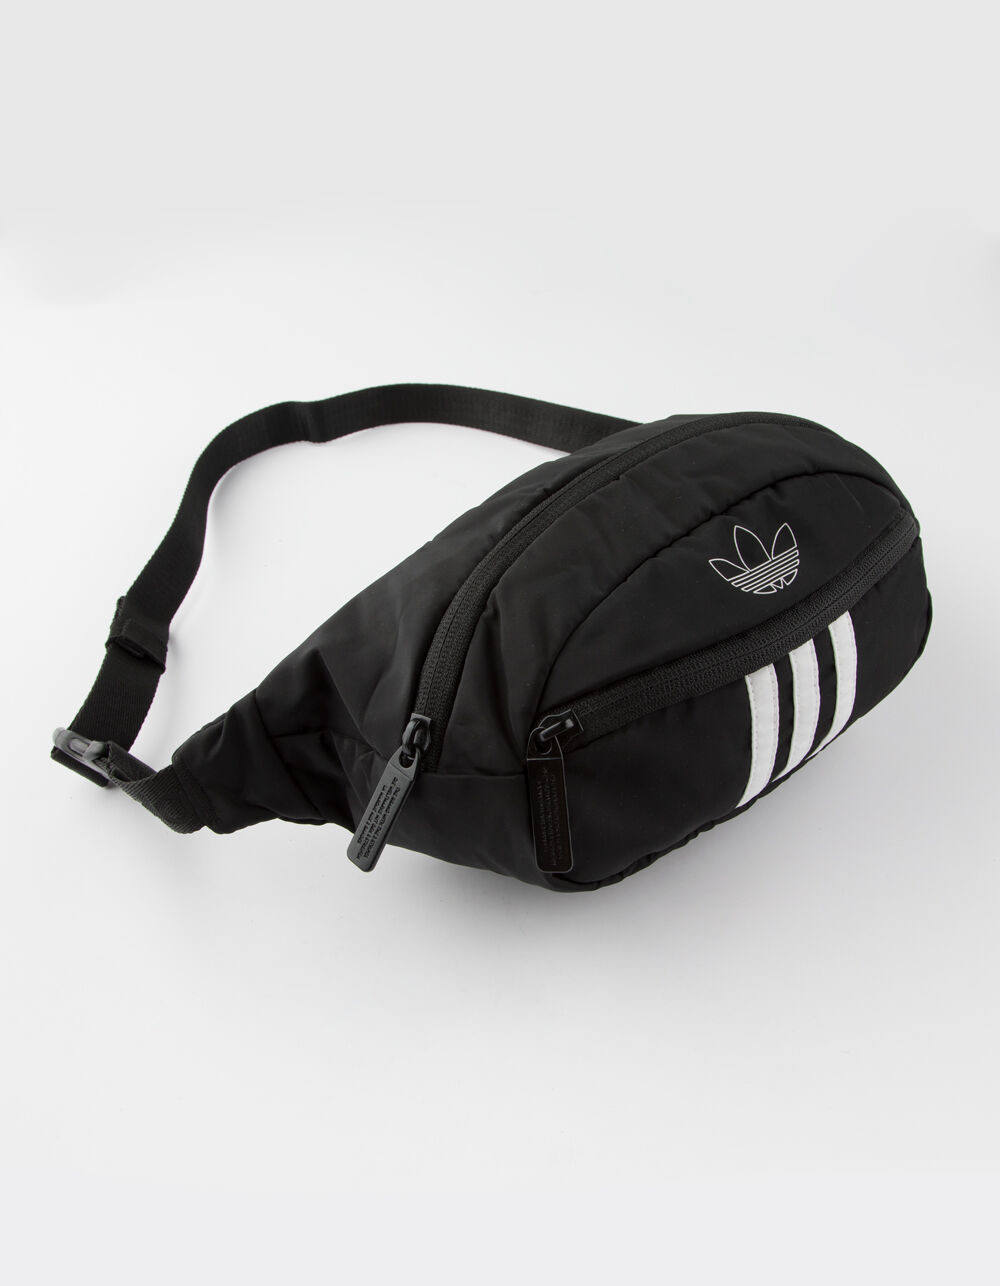 NWT Adidas Originals National 3 Stripes Unisex Waist Bag Fanny Pack Black  White